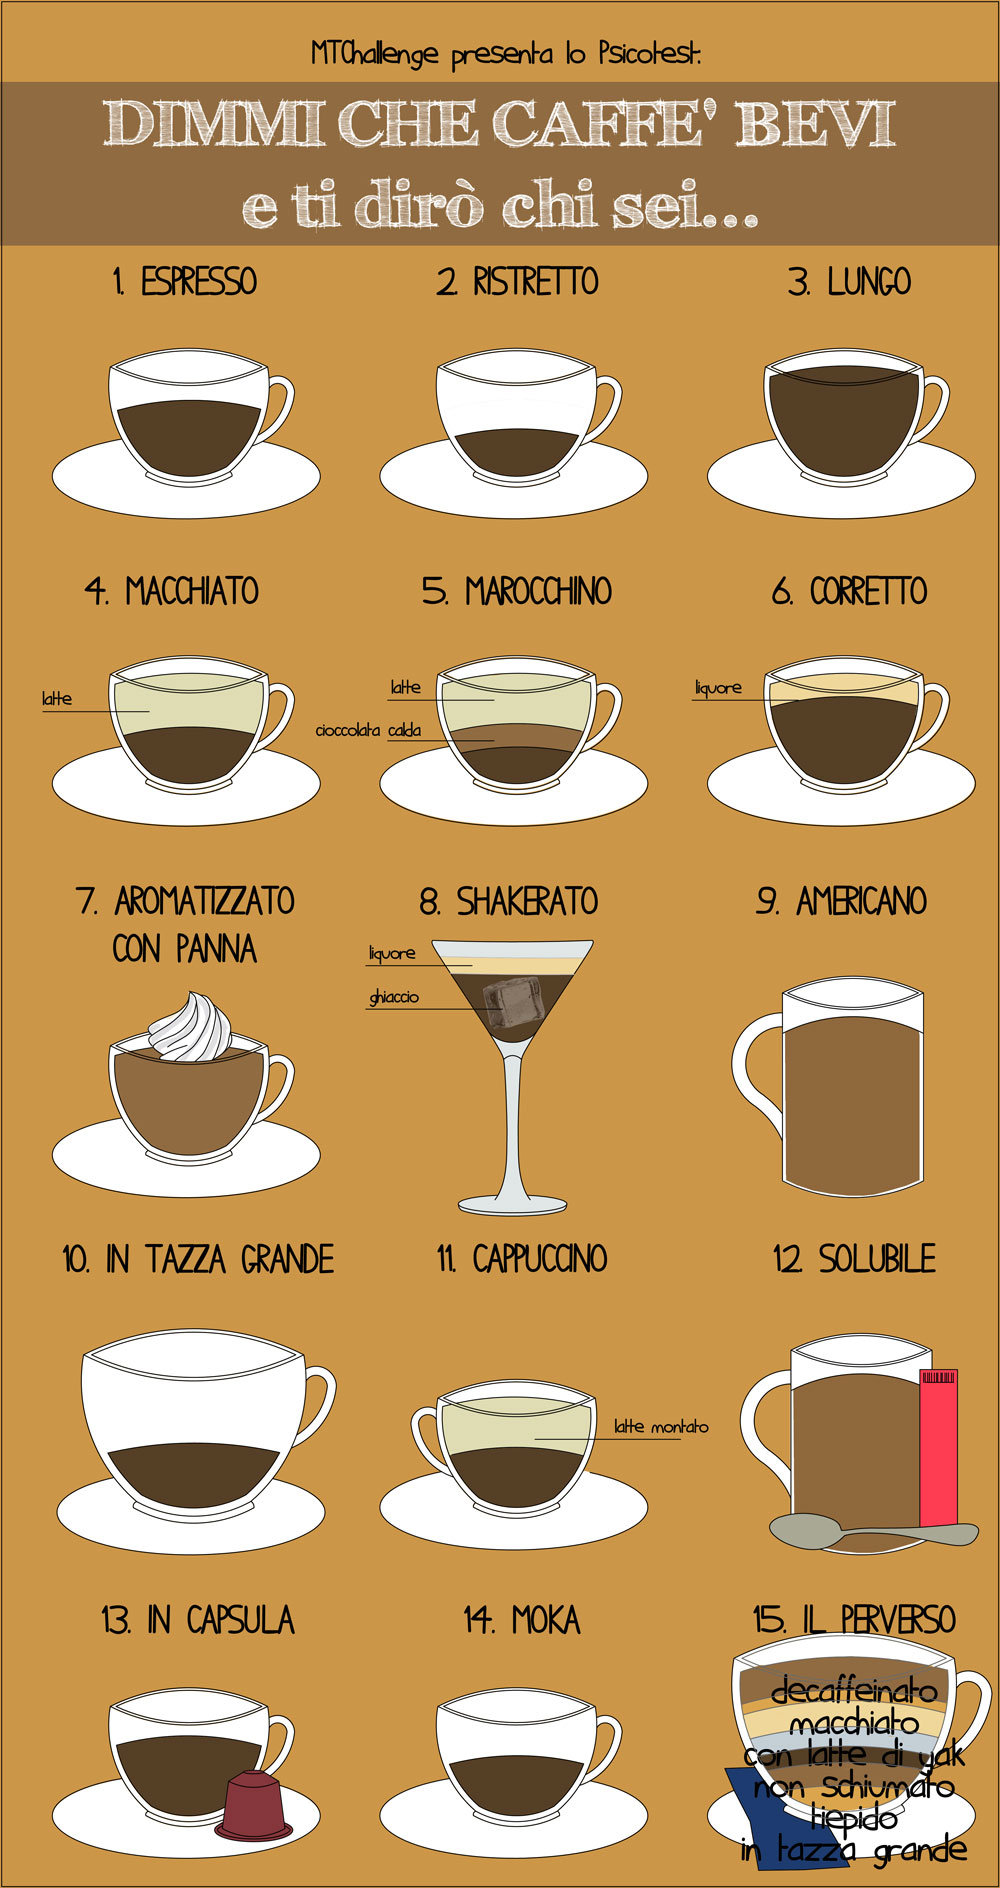 Caffè americano: caratteristiche, ricetta, calorie e procedimento per farlo